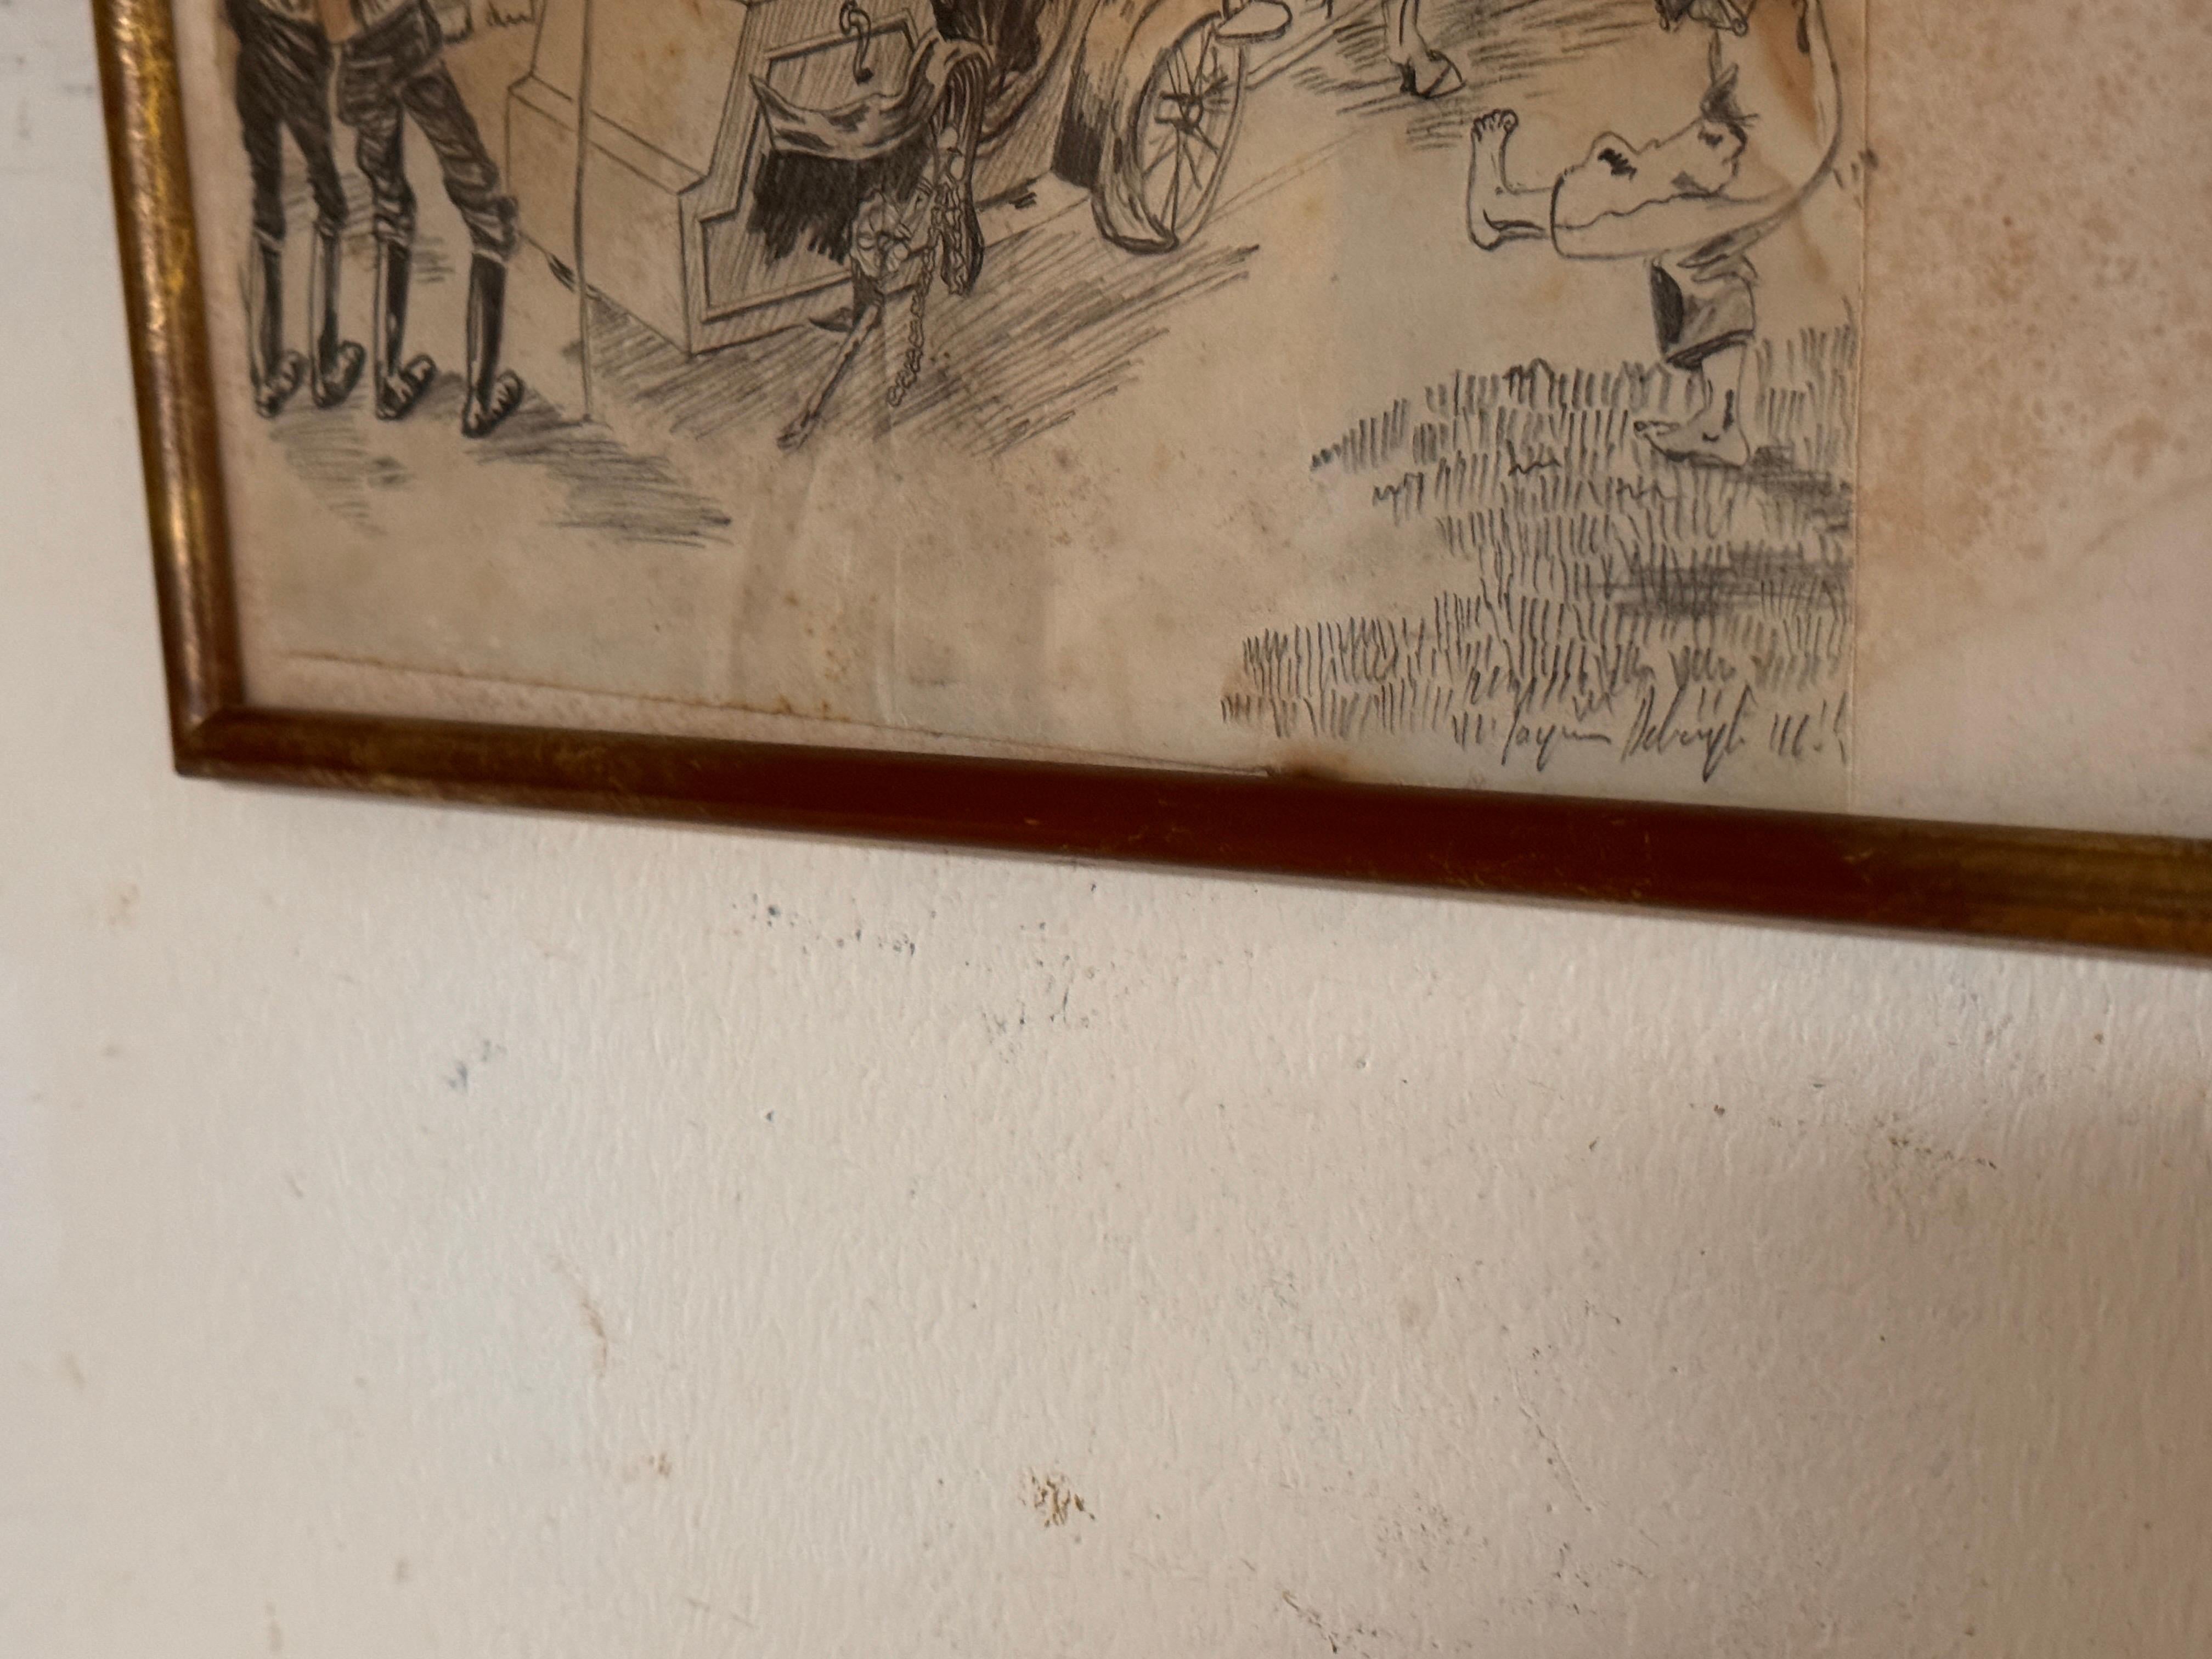 Dessin de caricature représentant des personnages dans un carrosse France 20e siècle.
Quelques décolorations du papier, voir les photos détaillées.